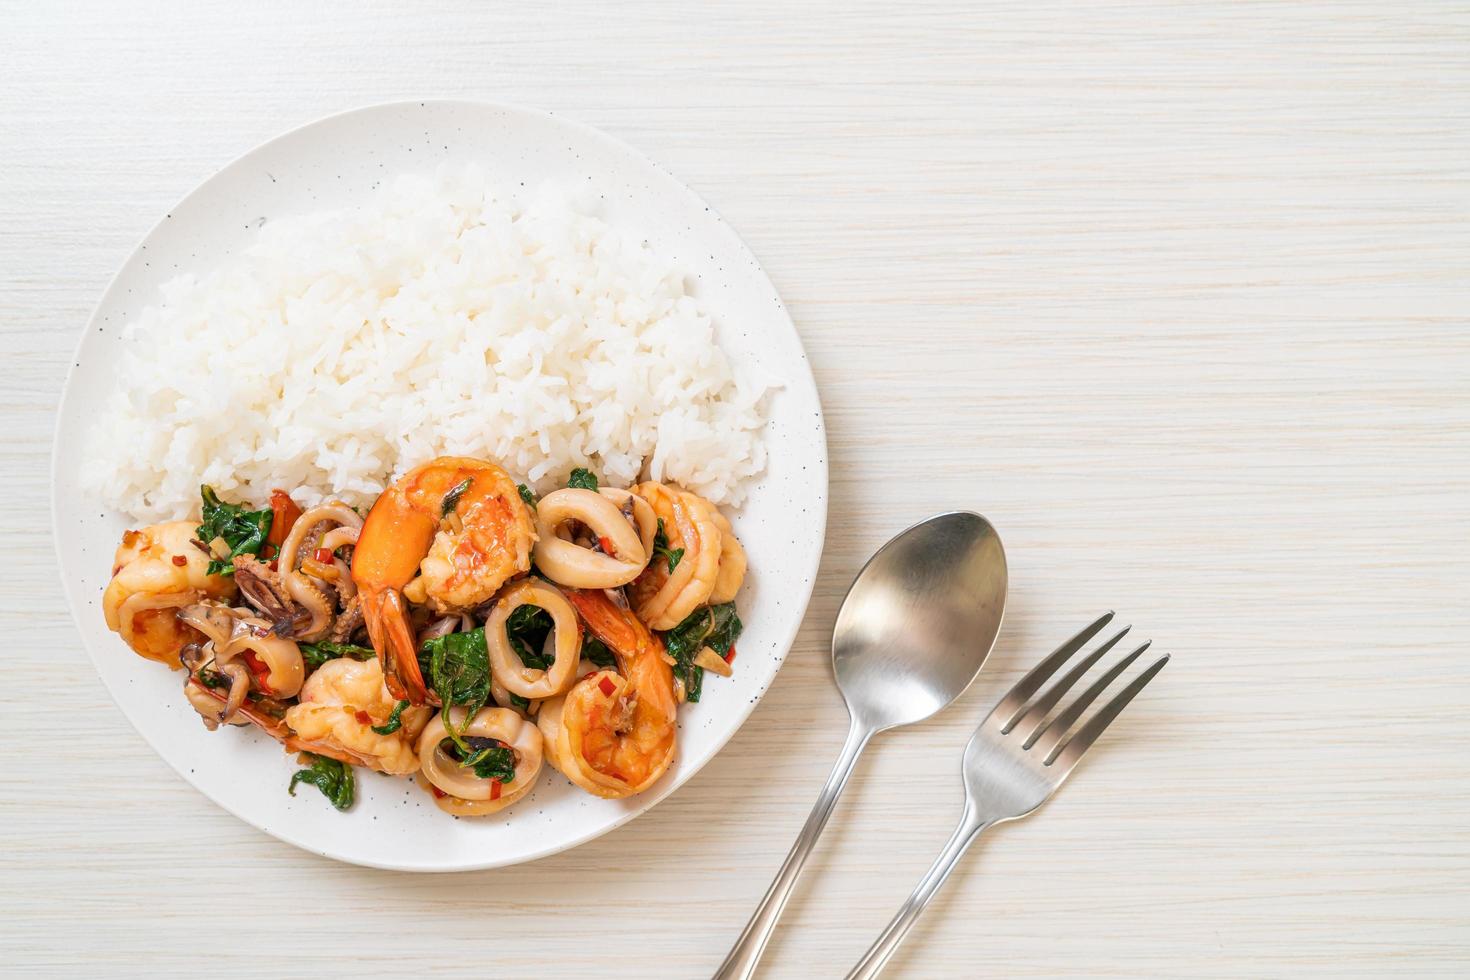 arroz y mariscos salteados de camarones y calamares con albahaca tailandesa - estilo de comida asiática foto